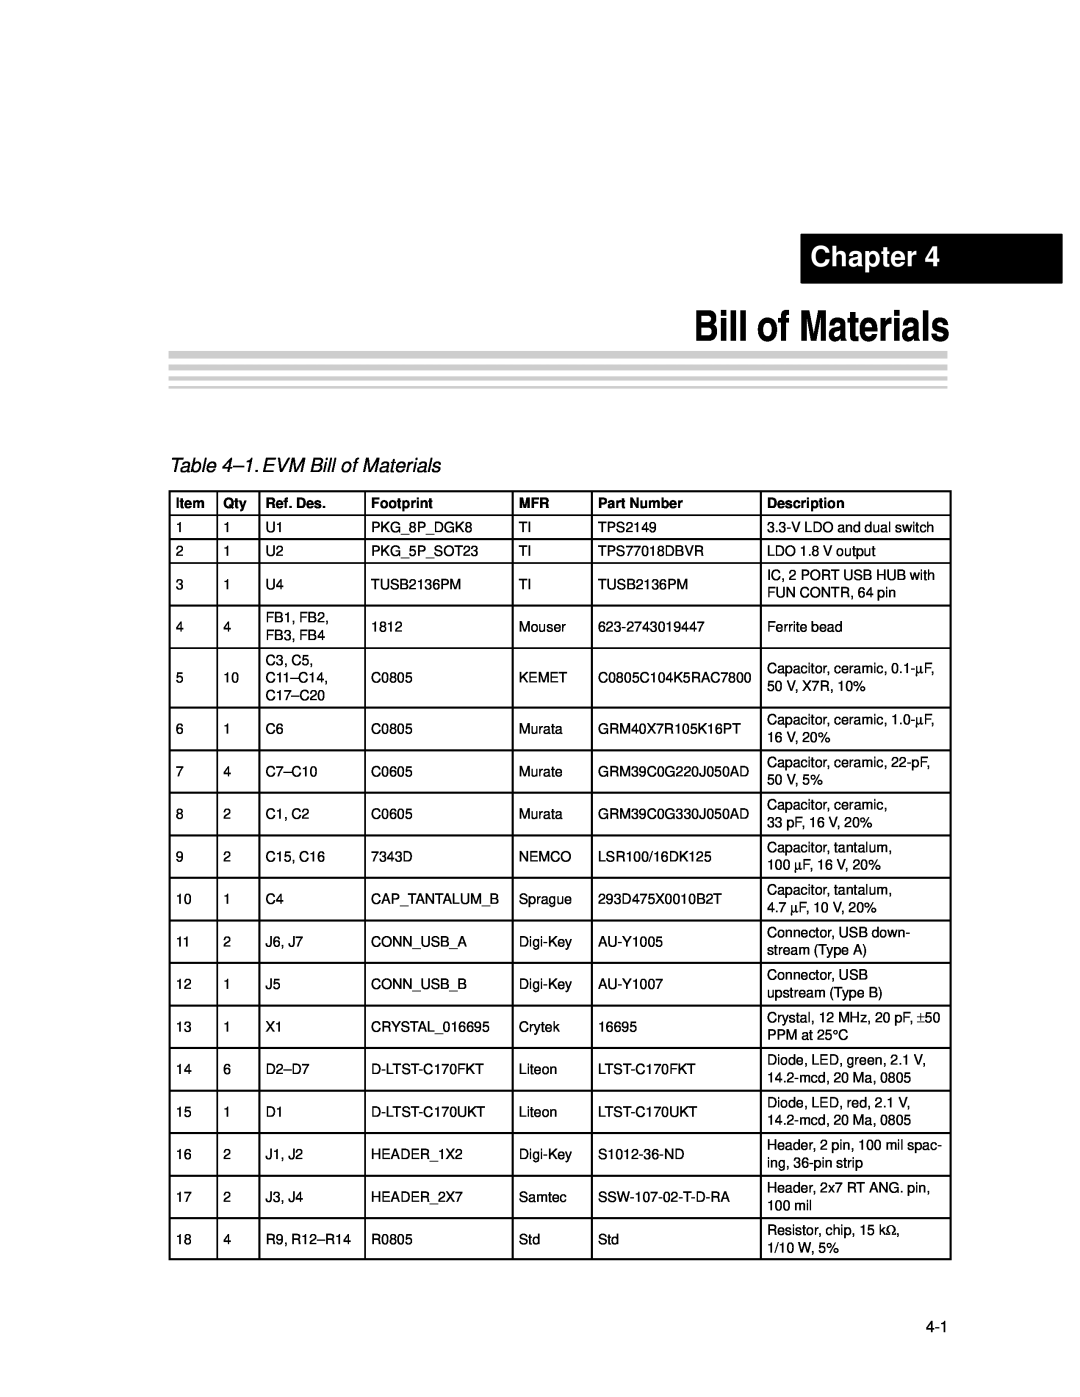 Texas Instruments TPS2149 manual 1. EVM Bill of Materials, Chapter, Ref. Des, Footprint, Part Number, Description 